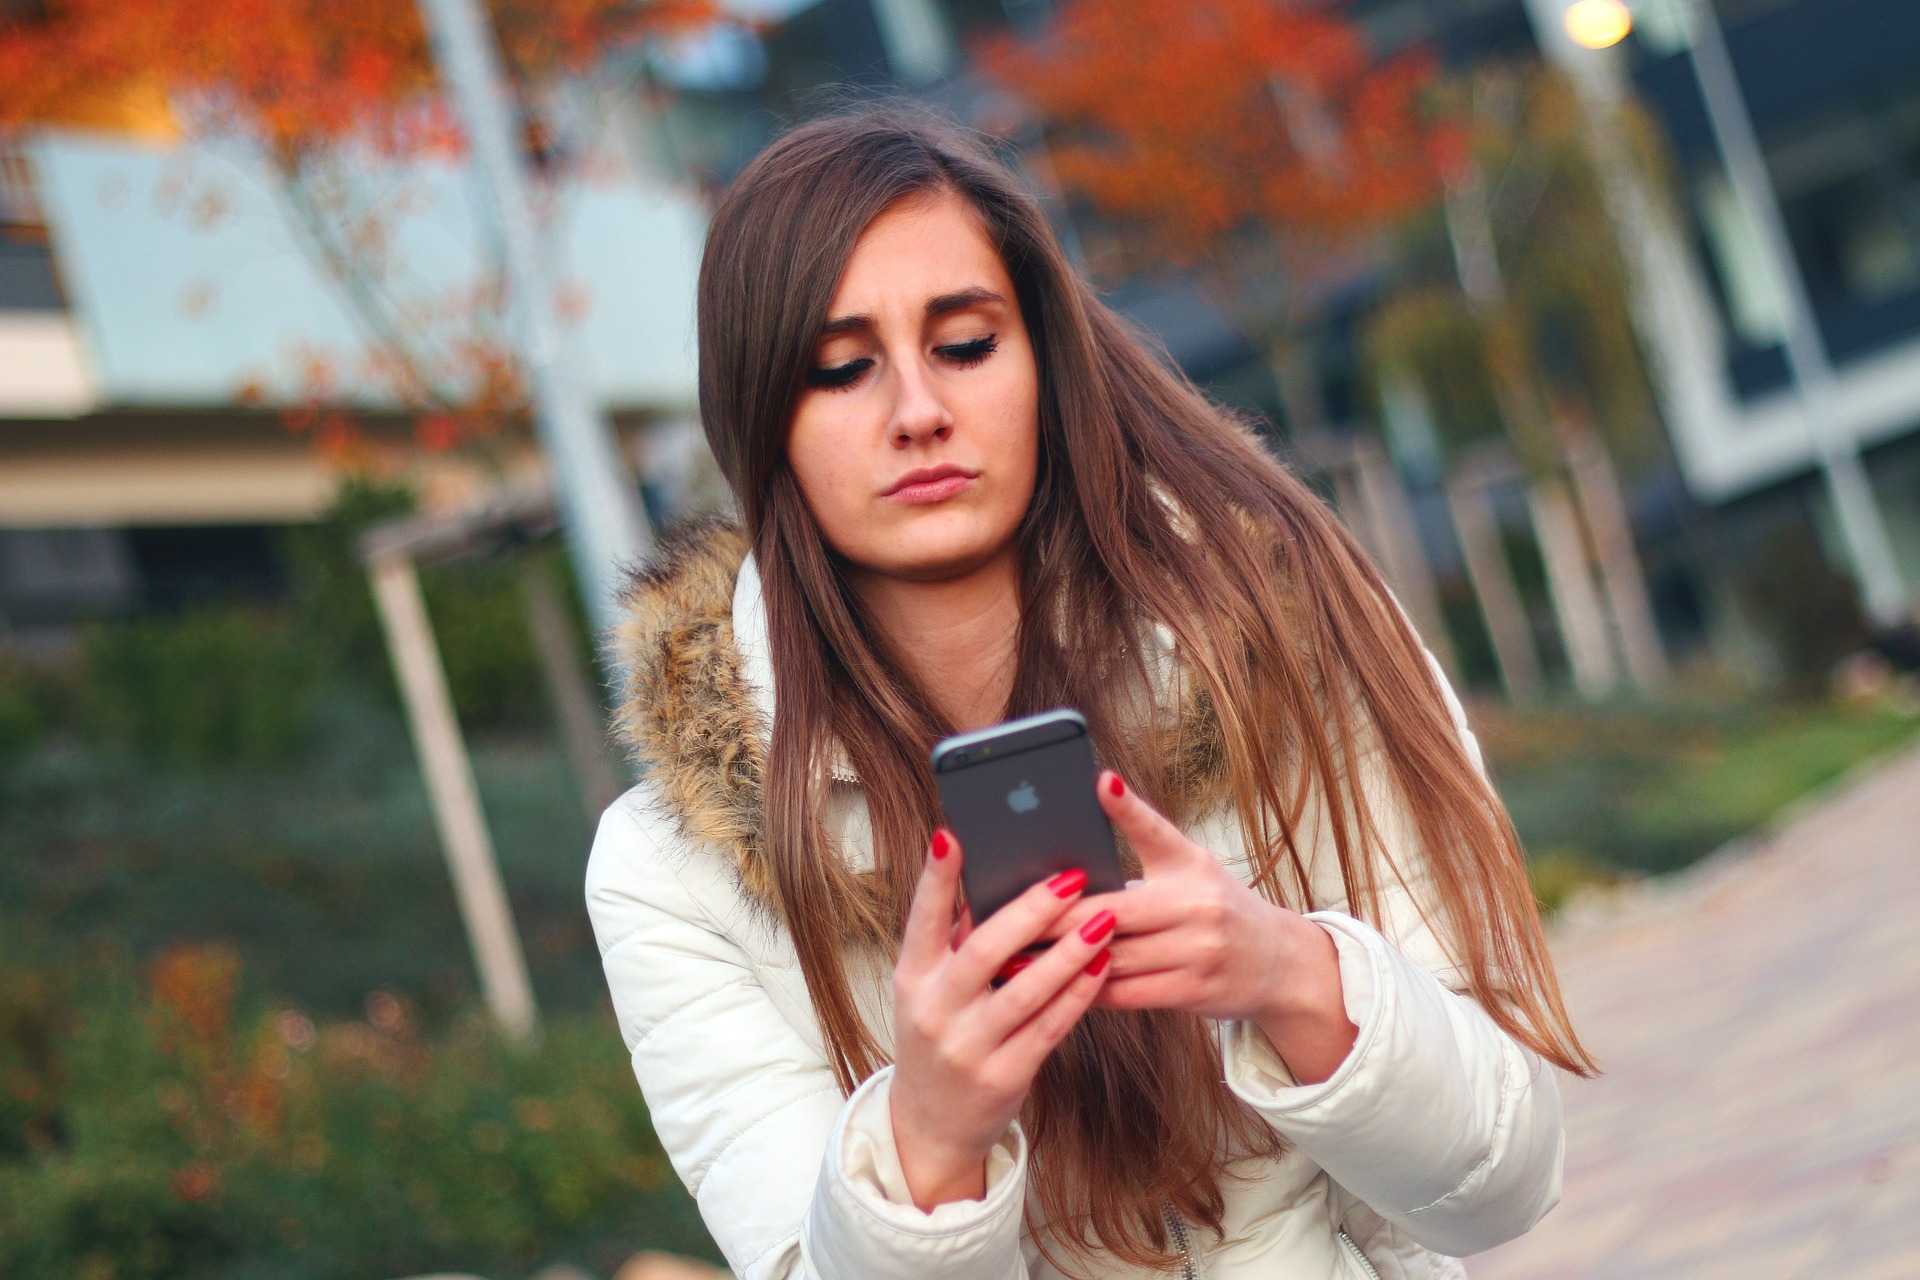 Usar un smartphone cambia tus decisiones morales ¿eso es bueno o es malo?